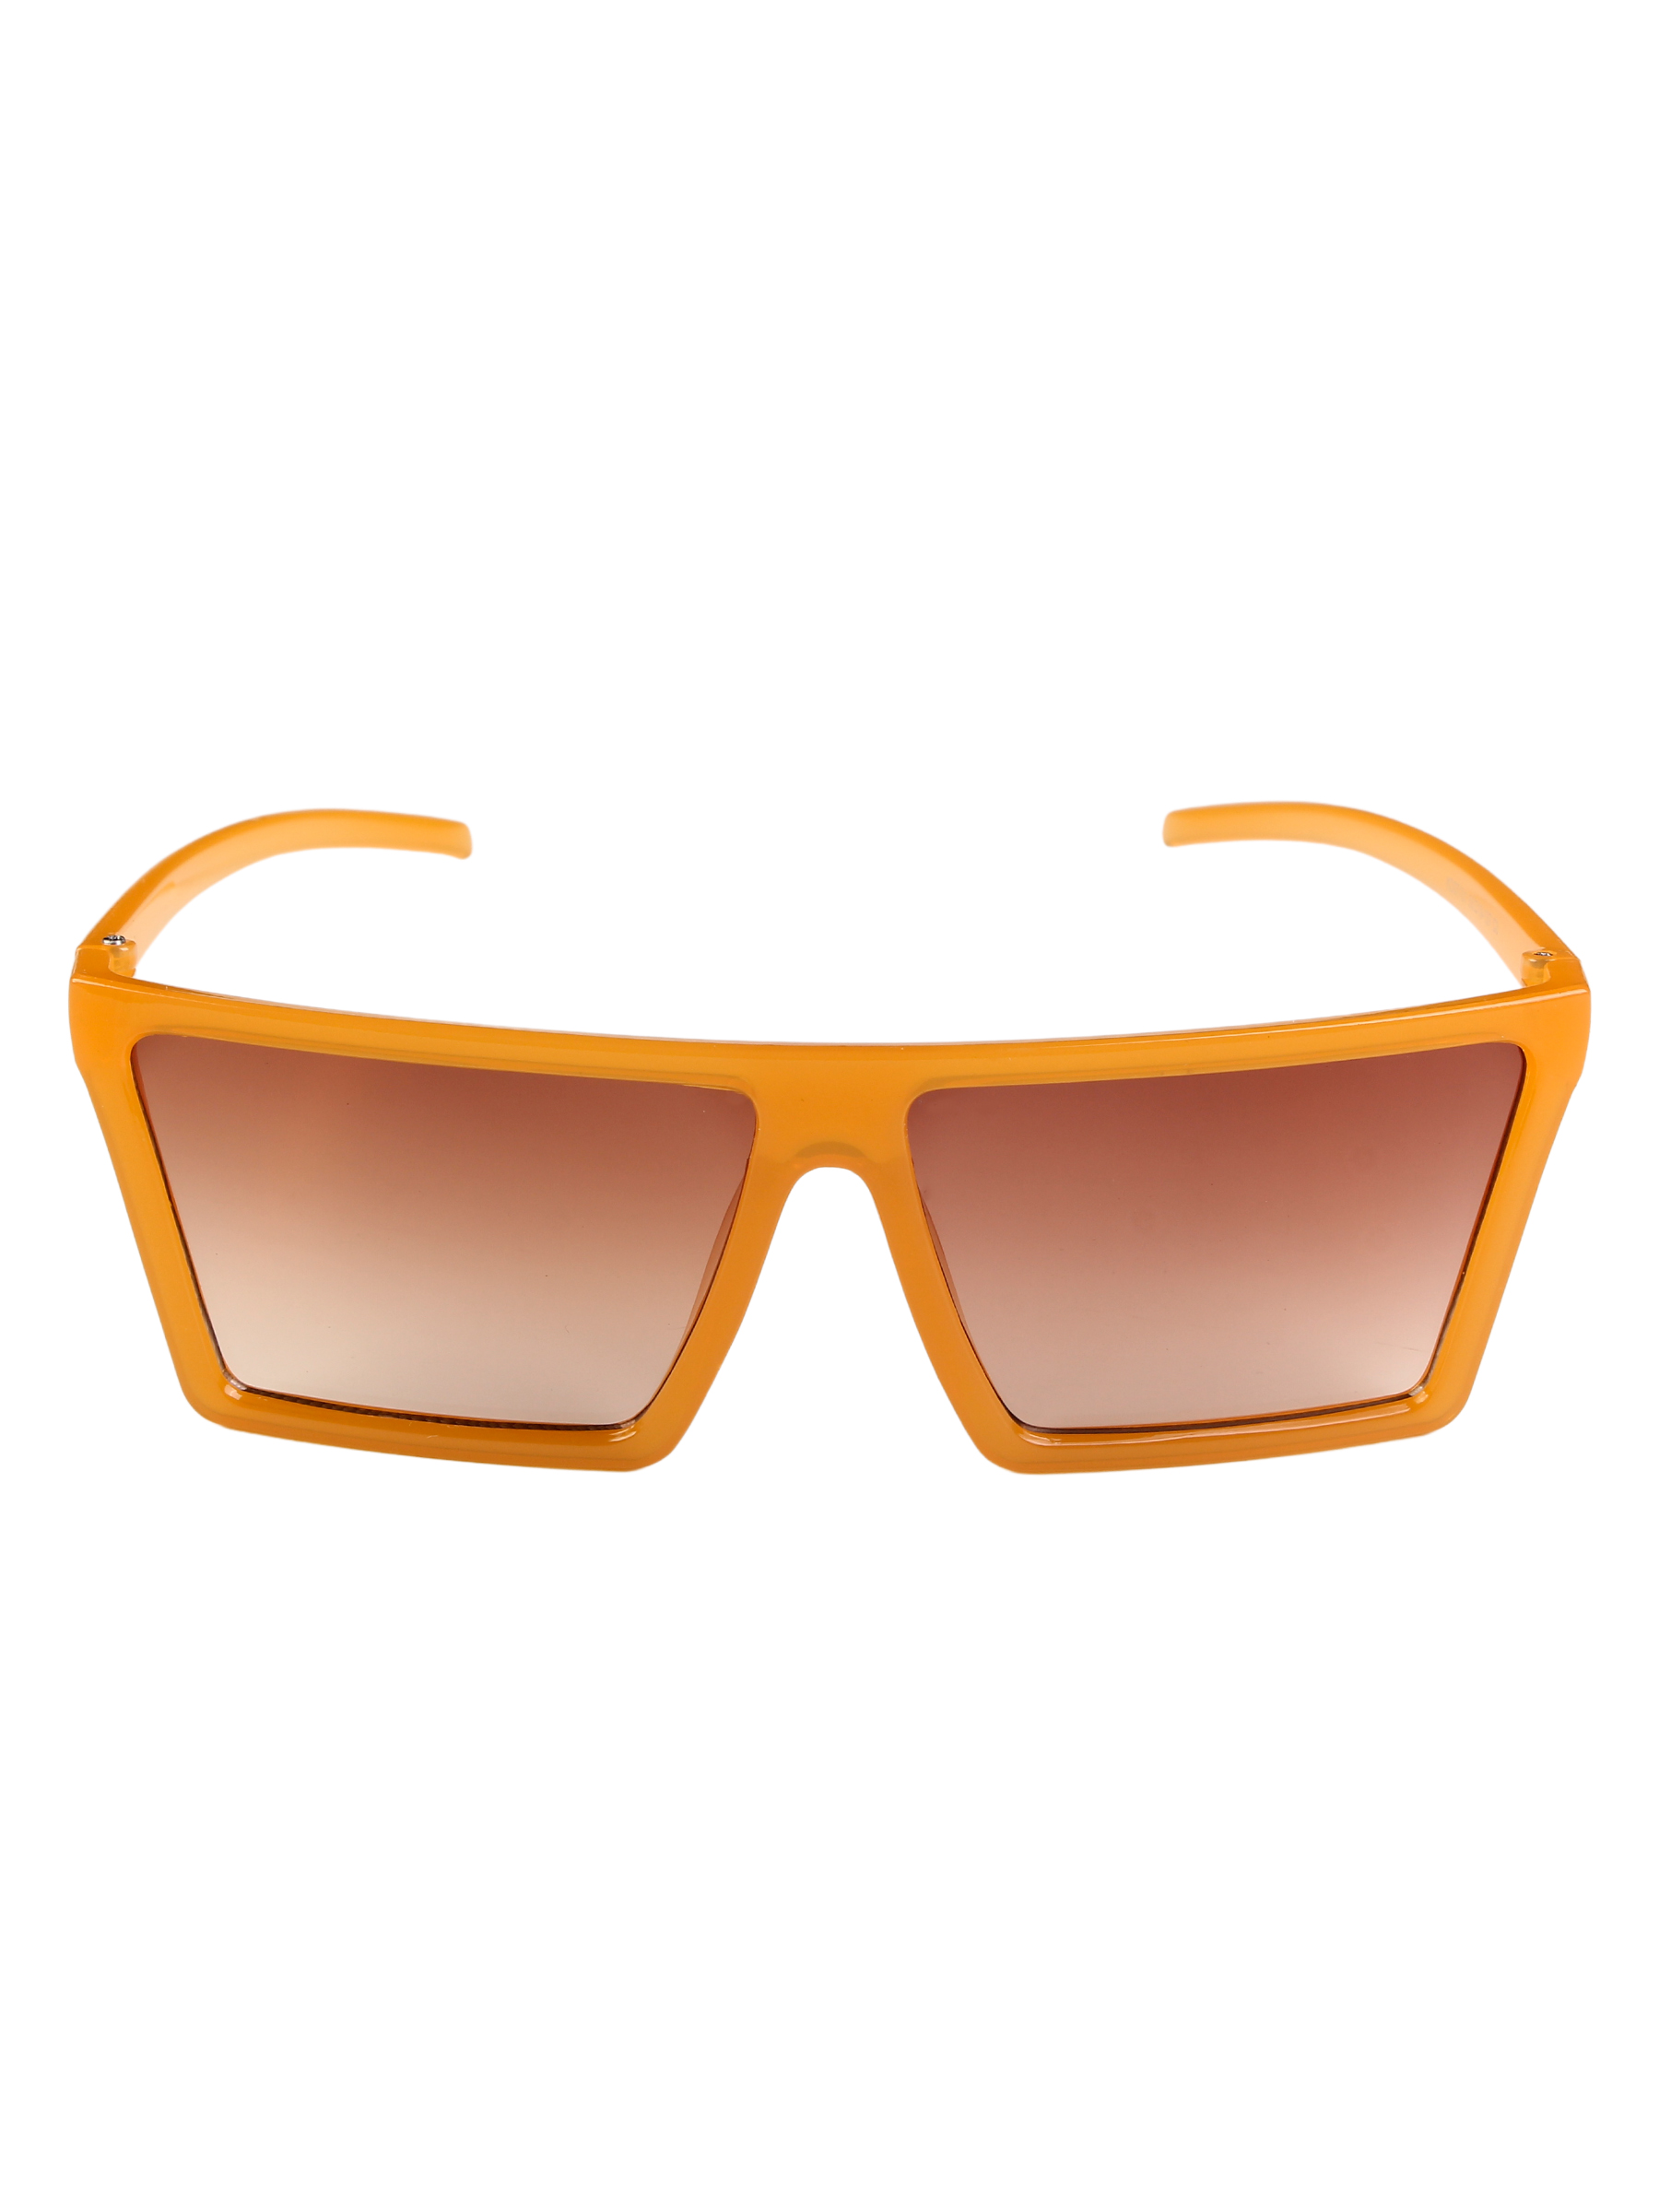 Солнцезащитные очки женские Pretty Mania DD025 коричневые